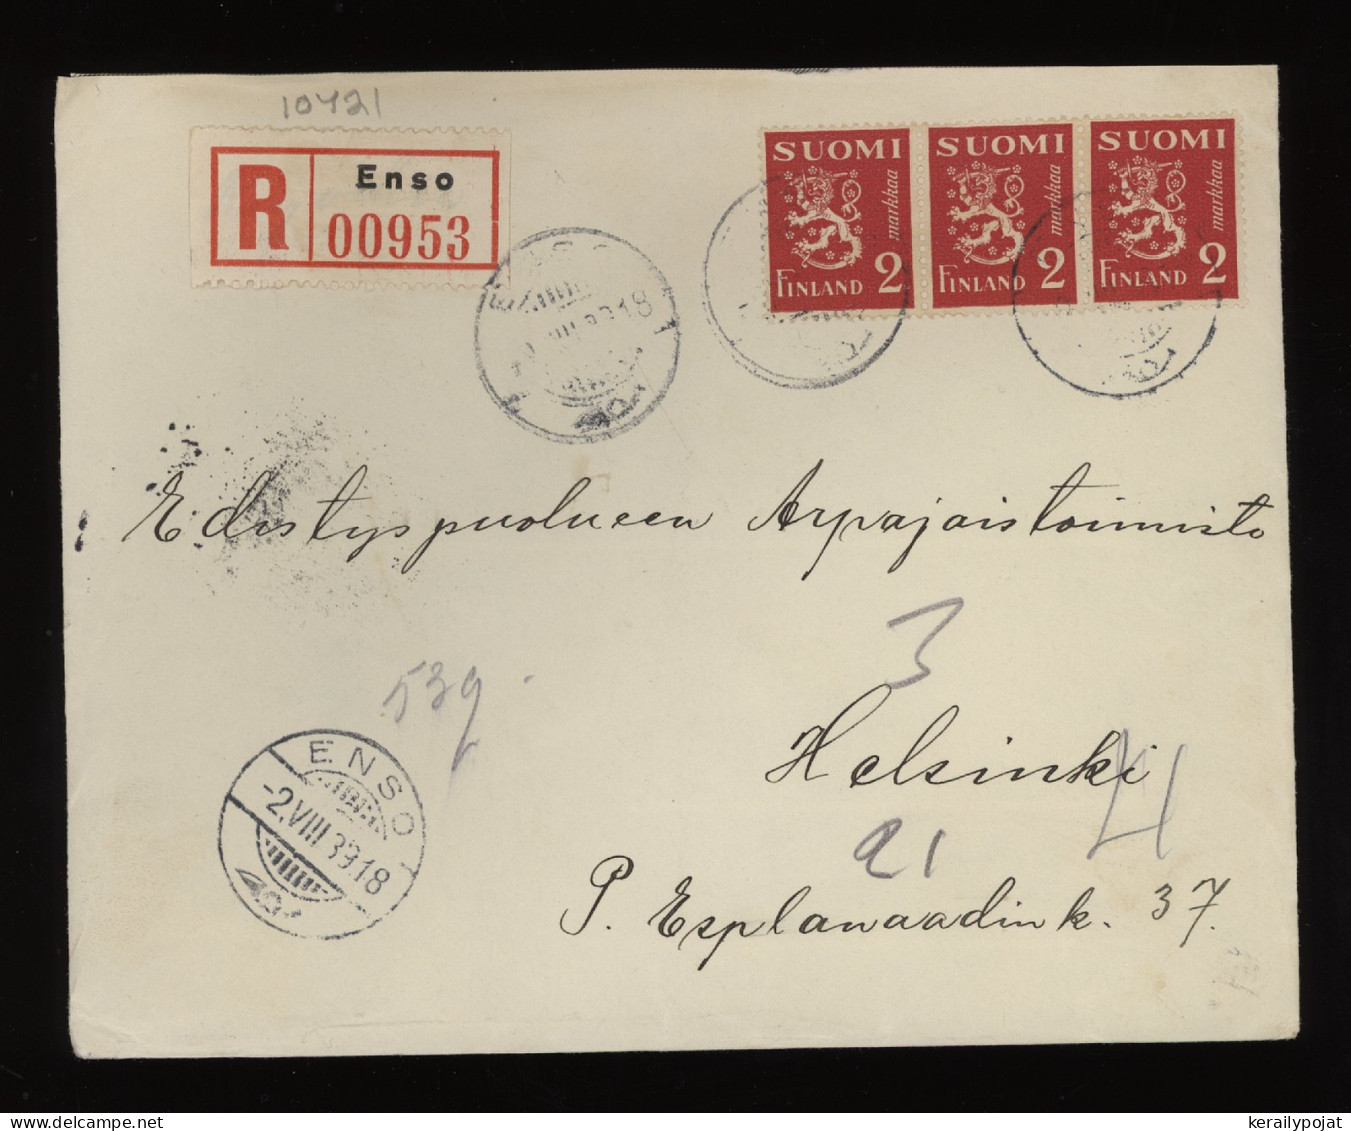 Finland 1939 Enso Registered Cover__(10421) - Cartas & Documentos